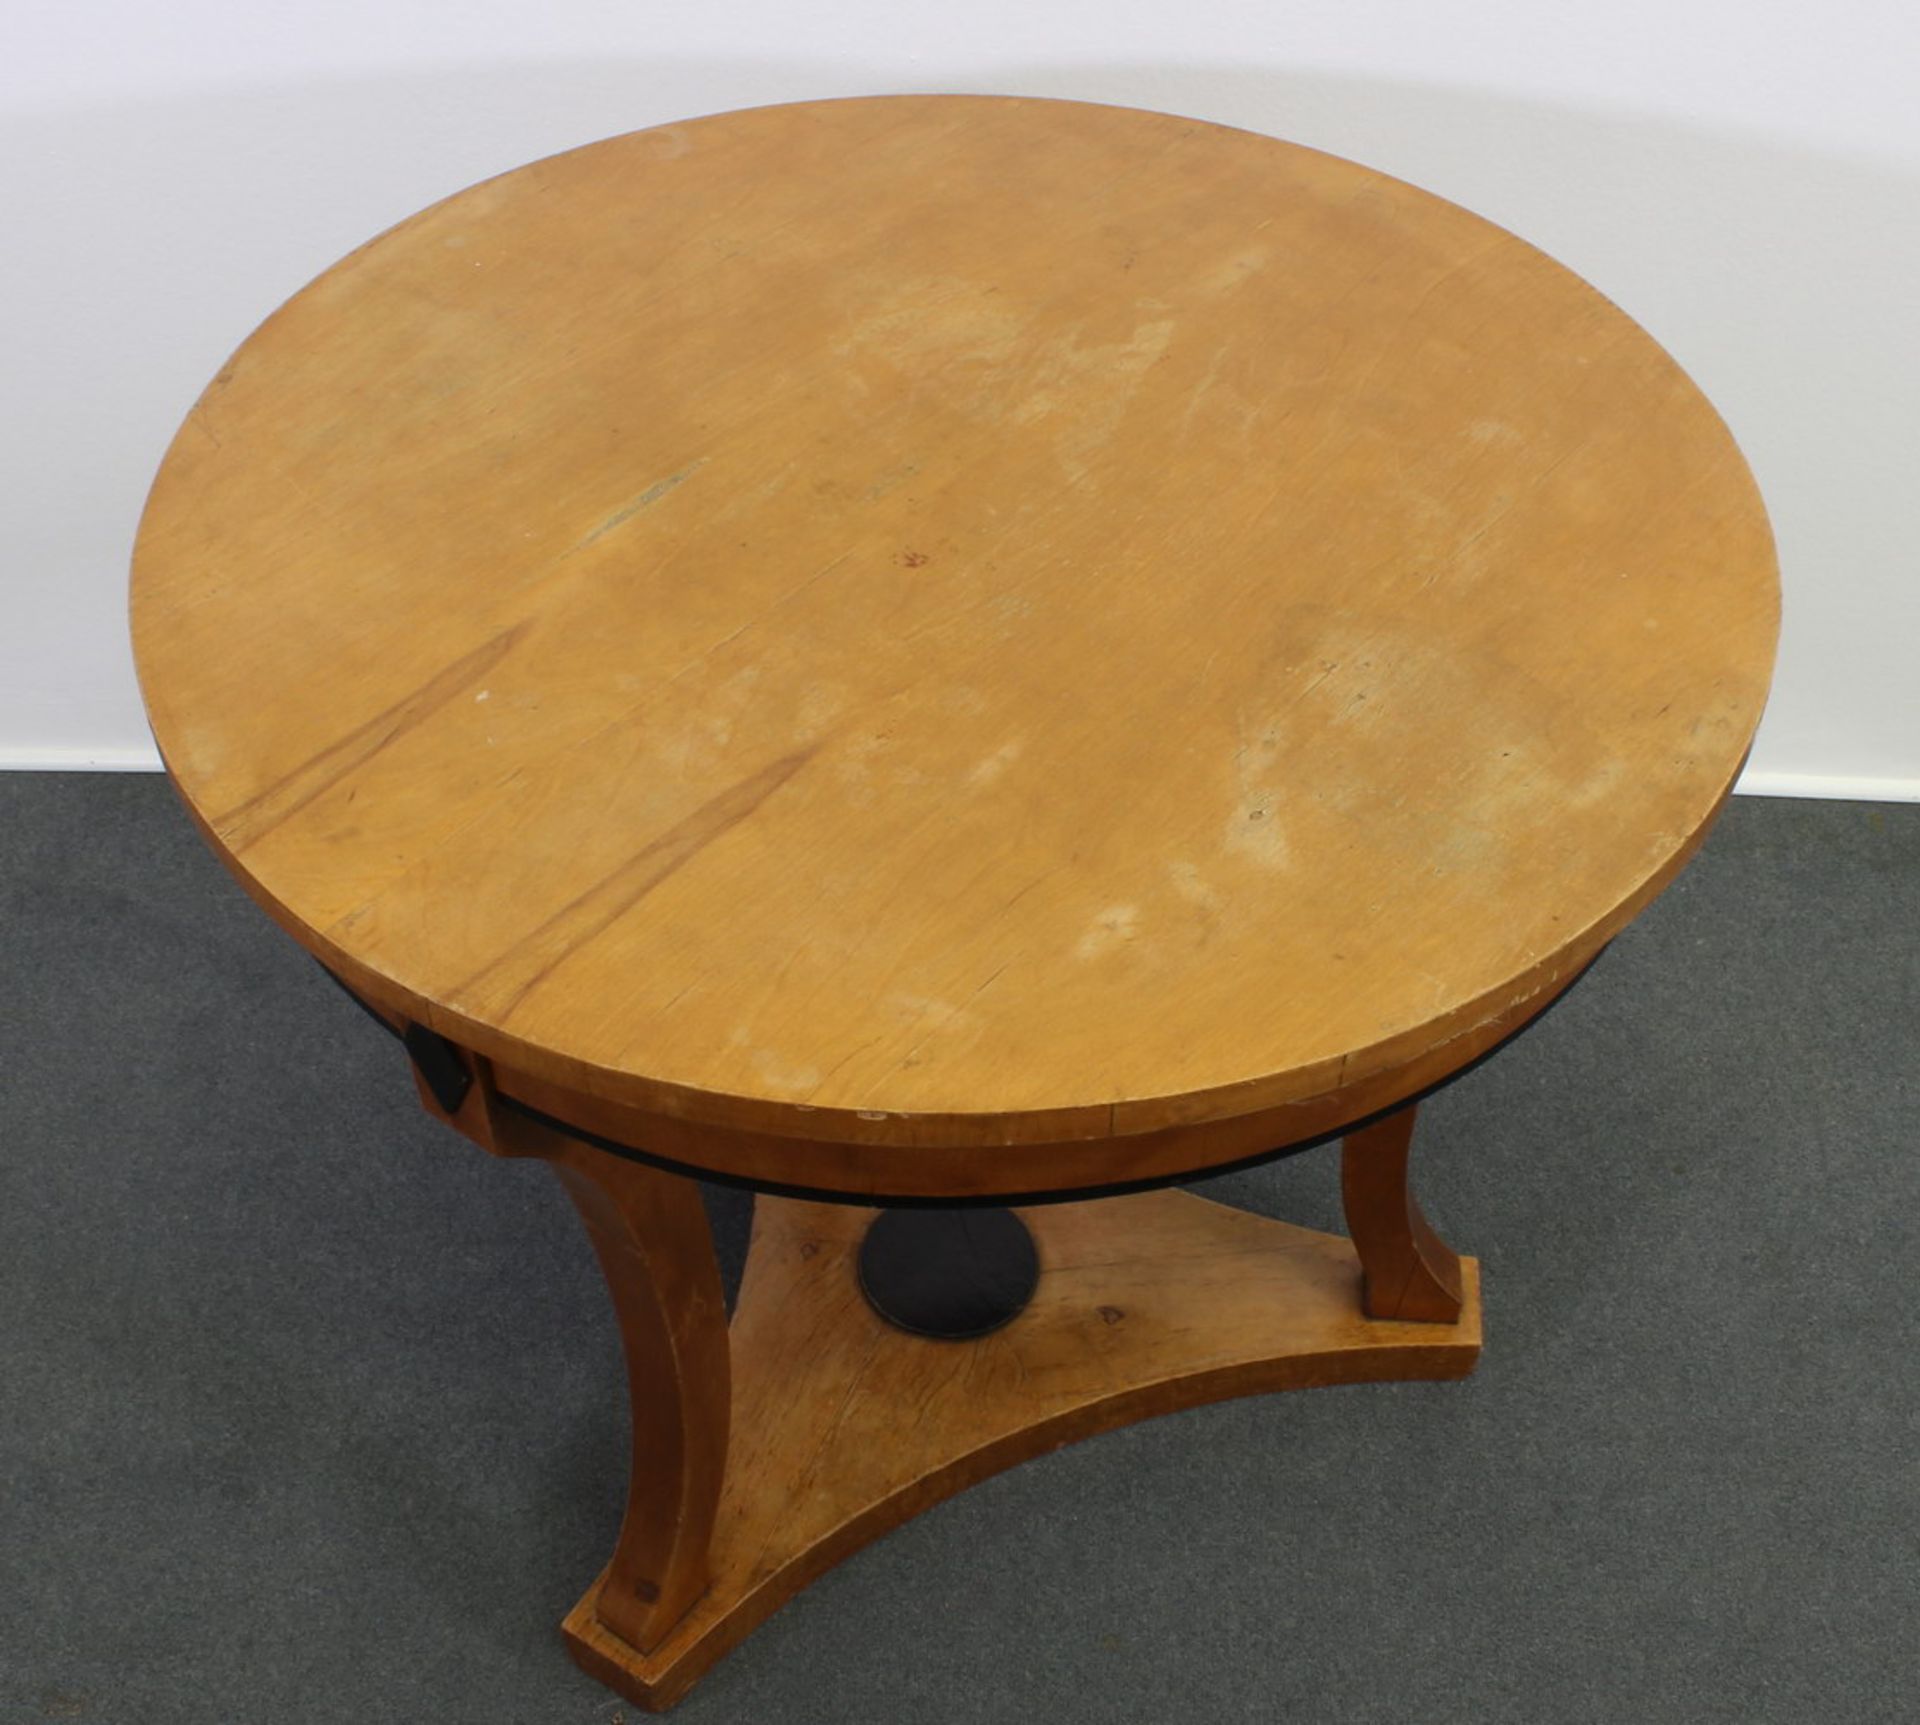 Runder Tisch, Biedermeier, um 1830, kirschbaumfarbig, drei geschwungene Beine auf dreipassigem - Bild 2 aus 2